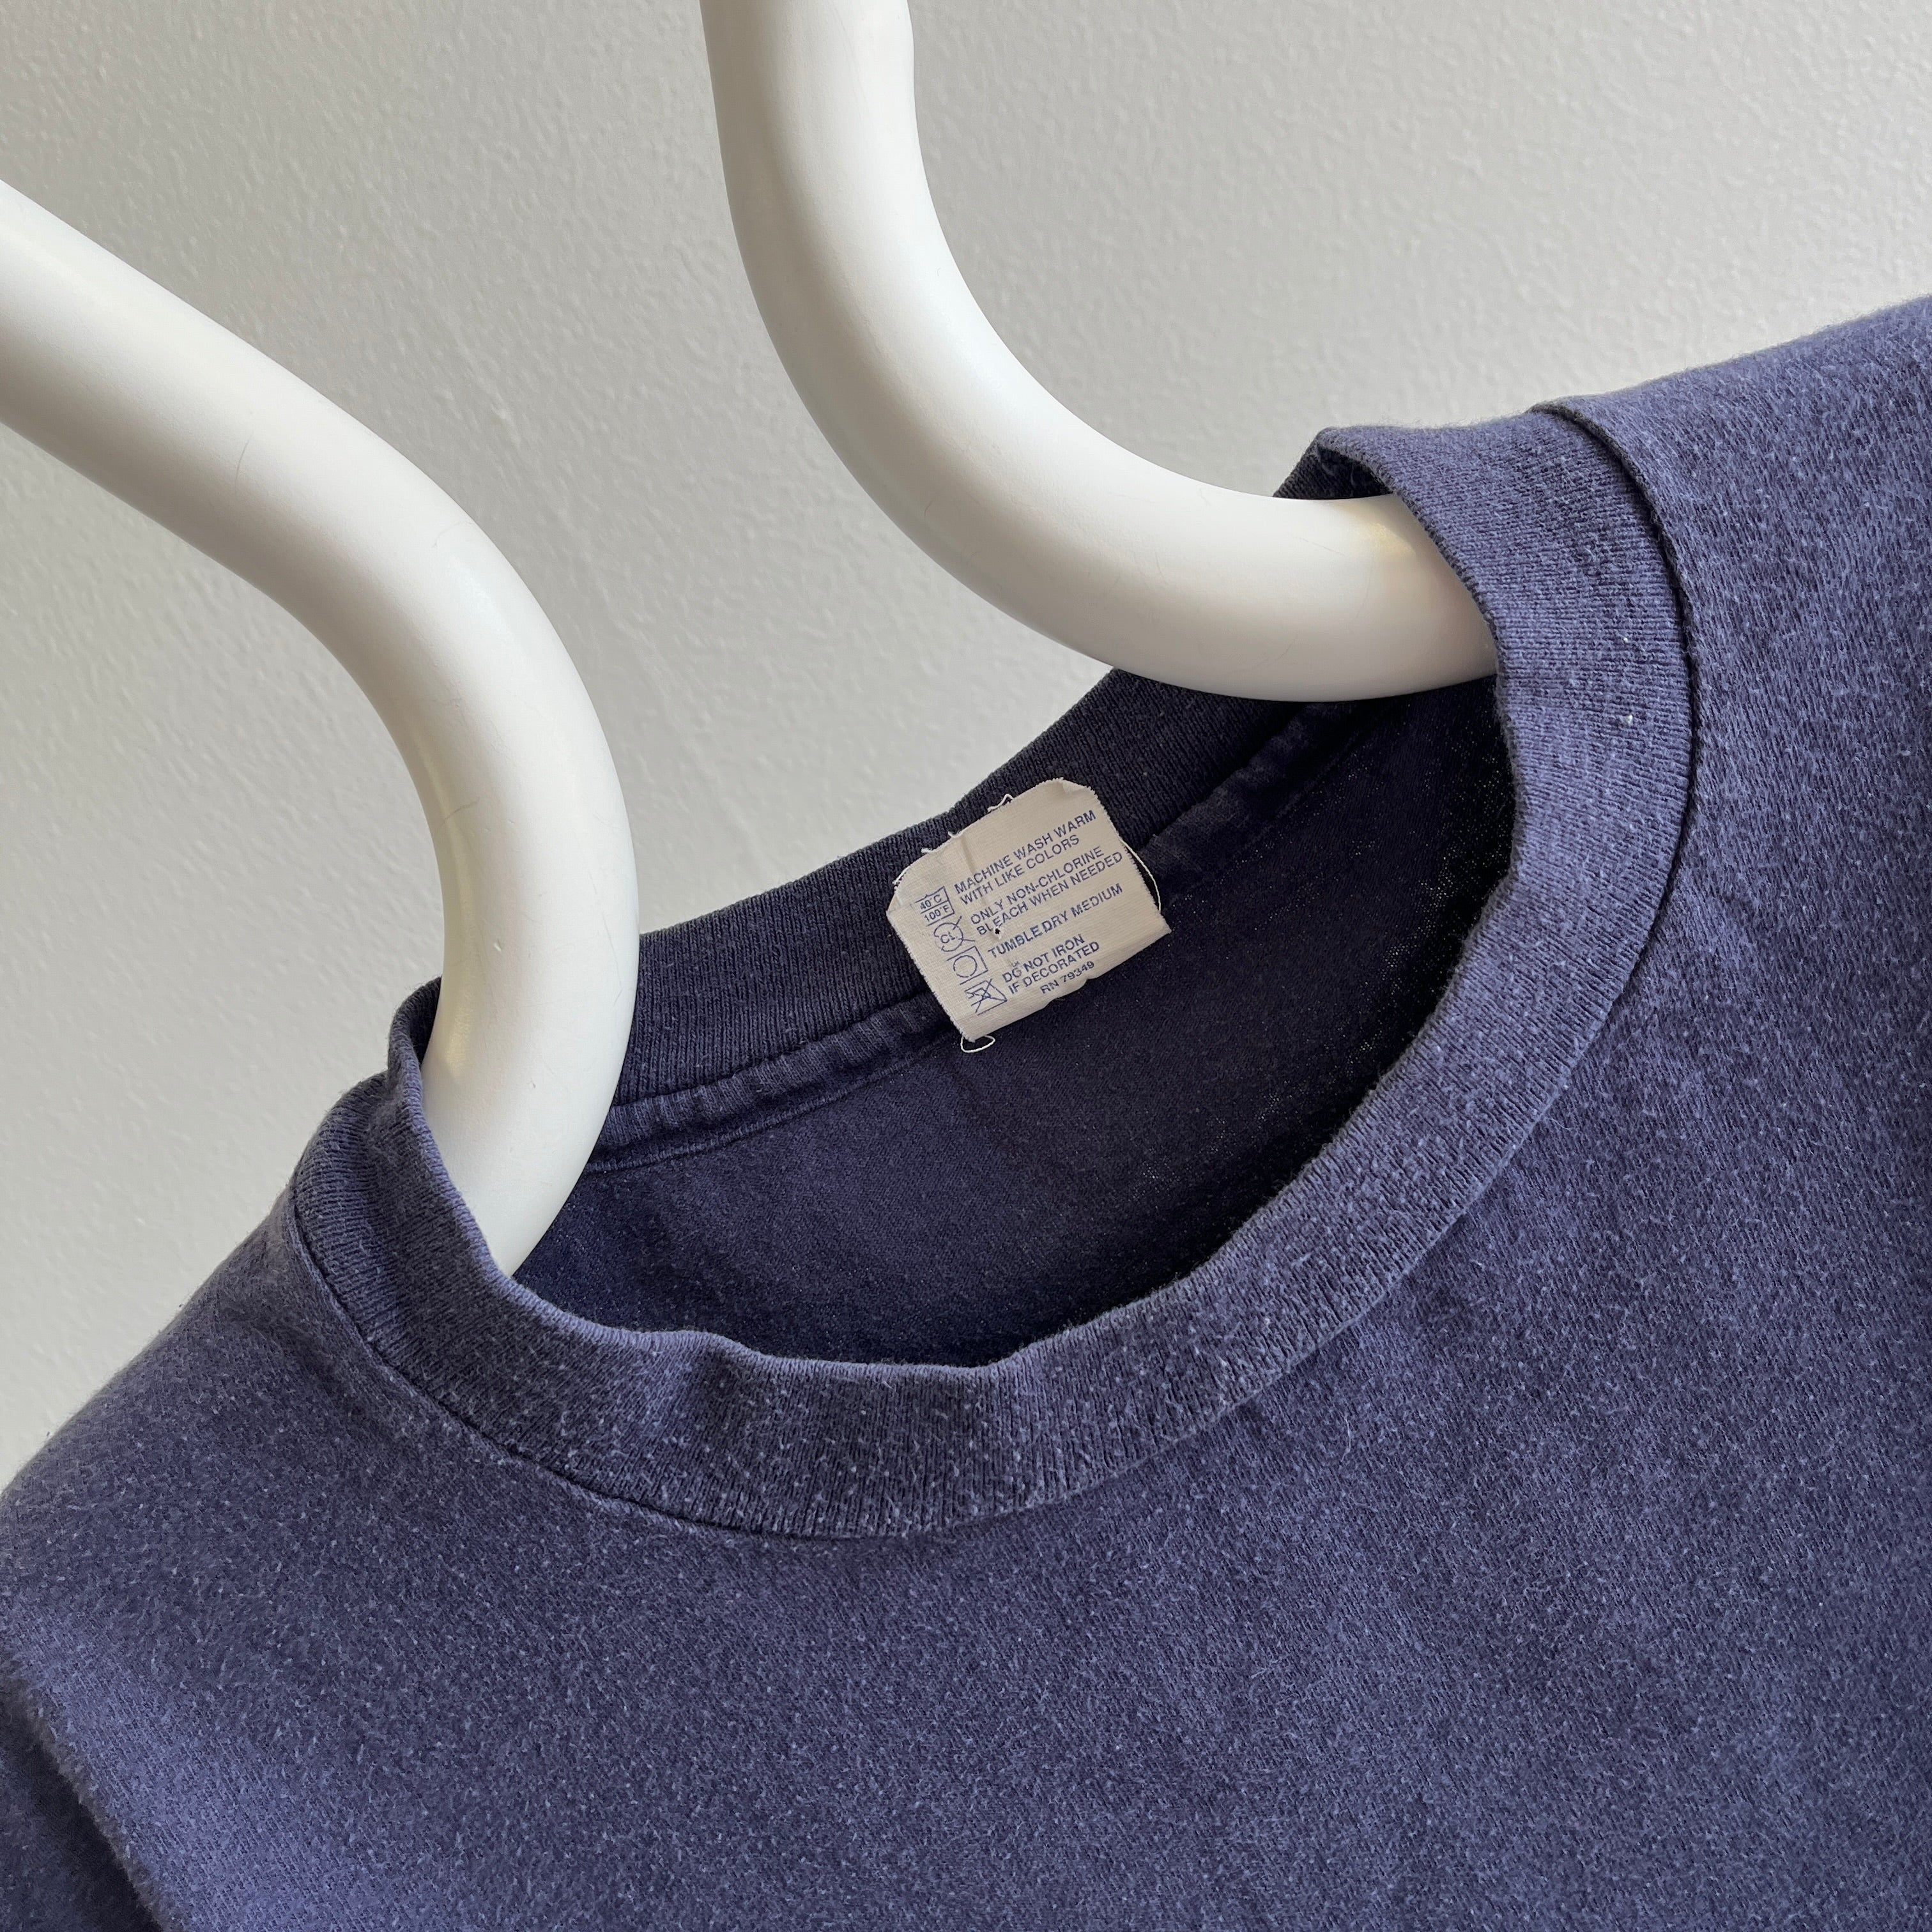 T-shirt en coton bleu marine délavé des années 1990 - Coupe oversize